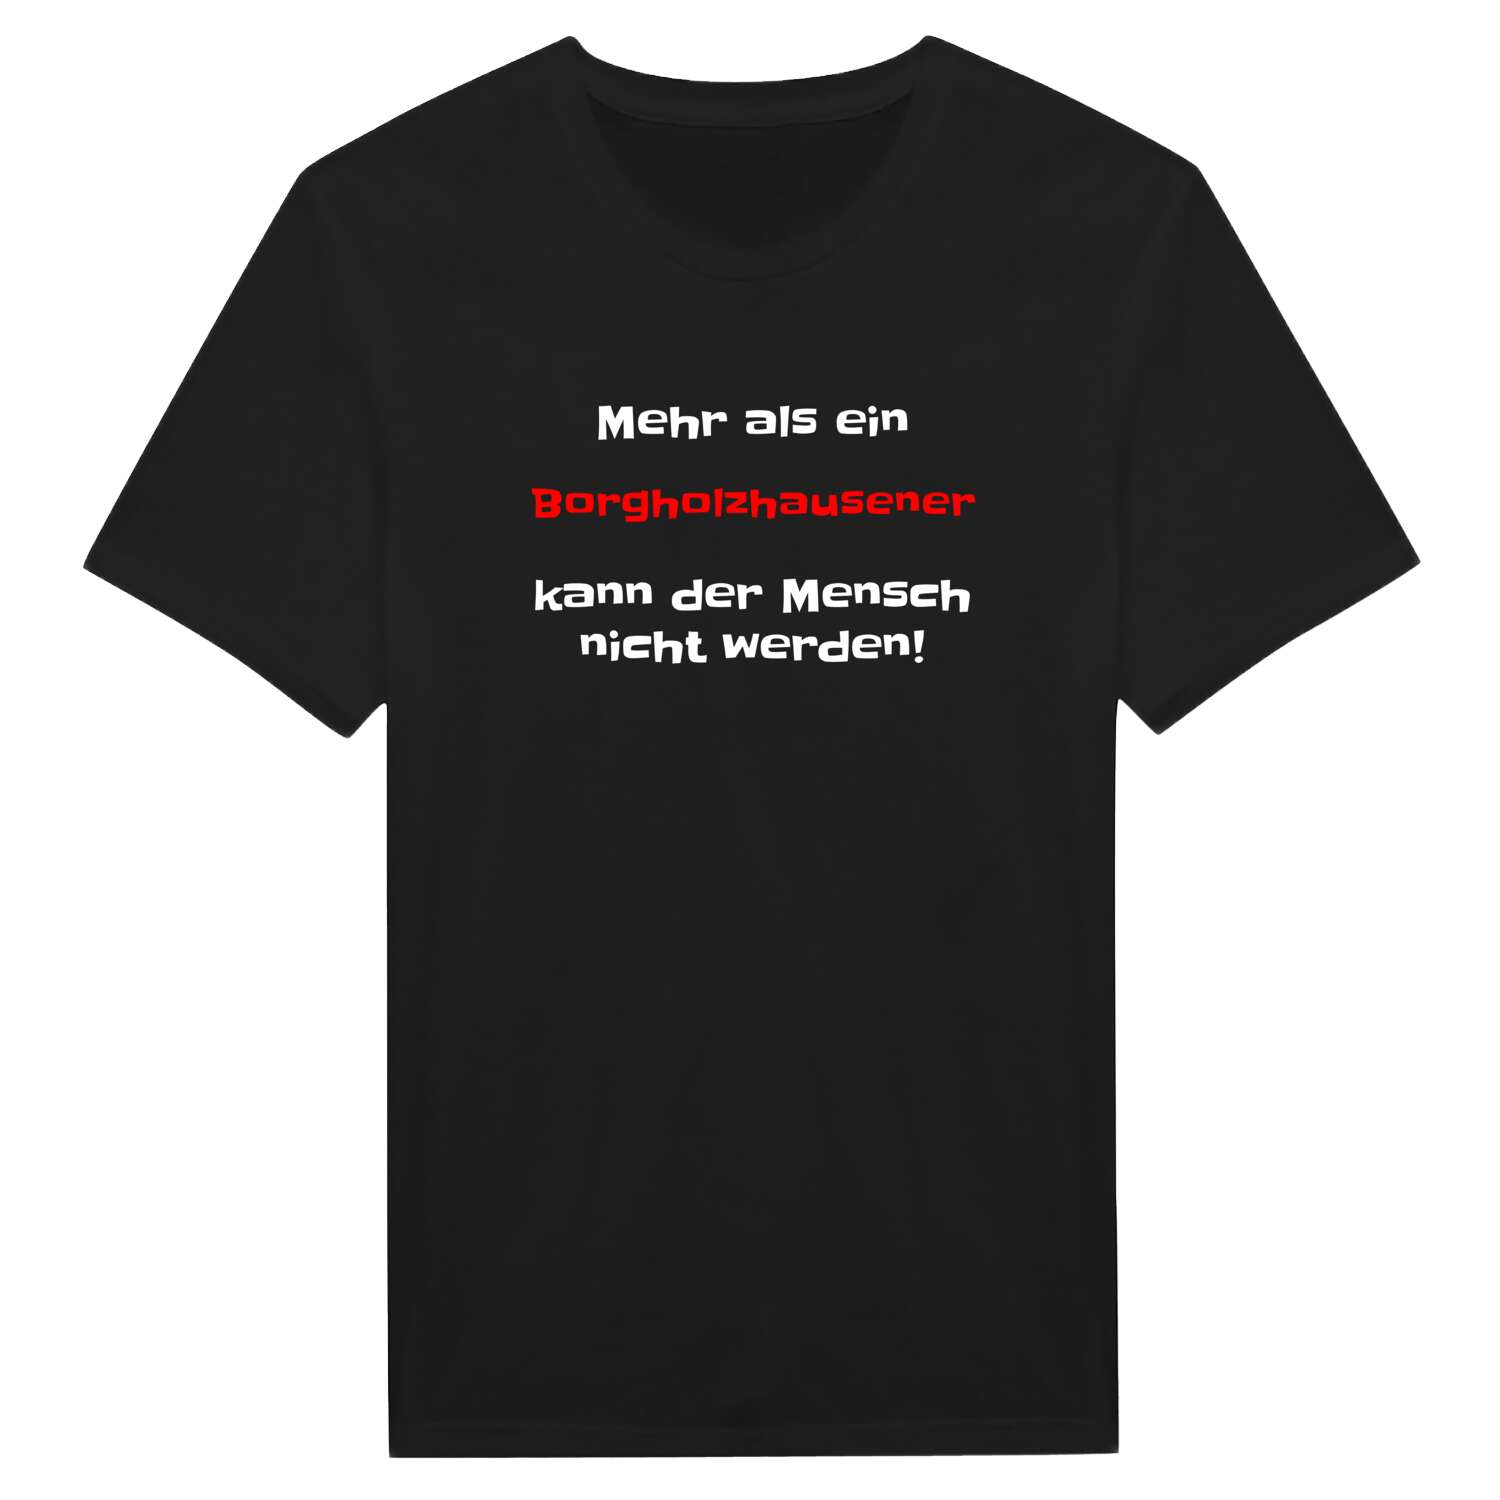 Borgholzhausen T-Shirt »Mehr als ein«